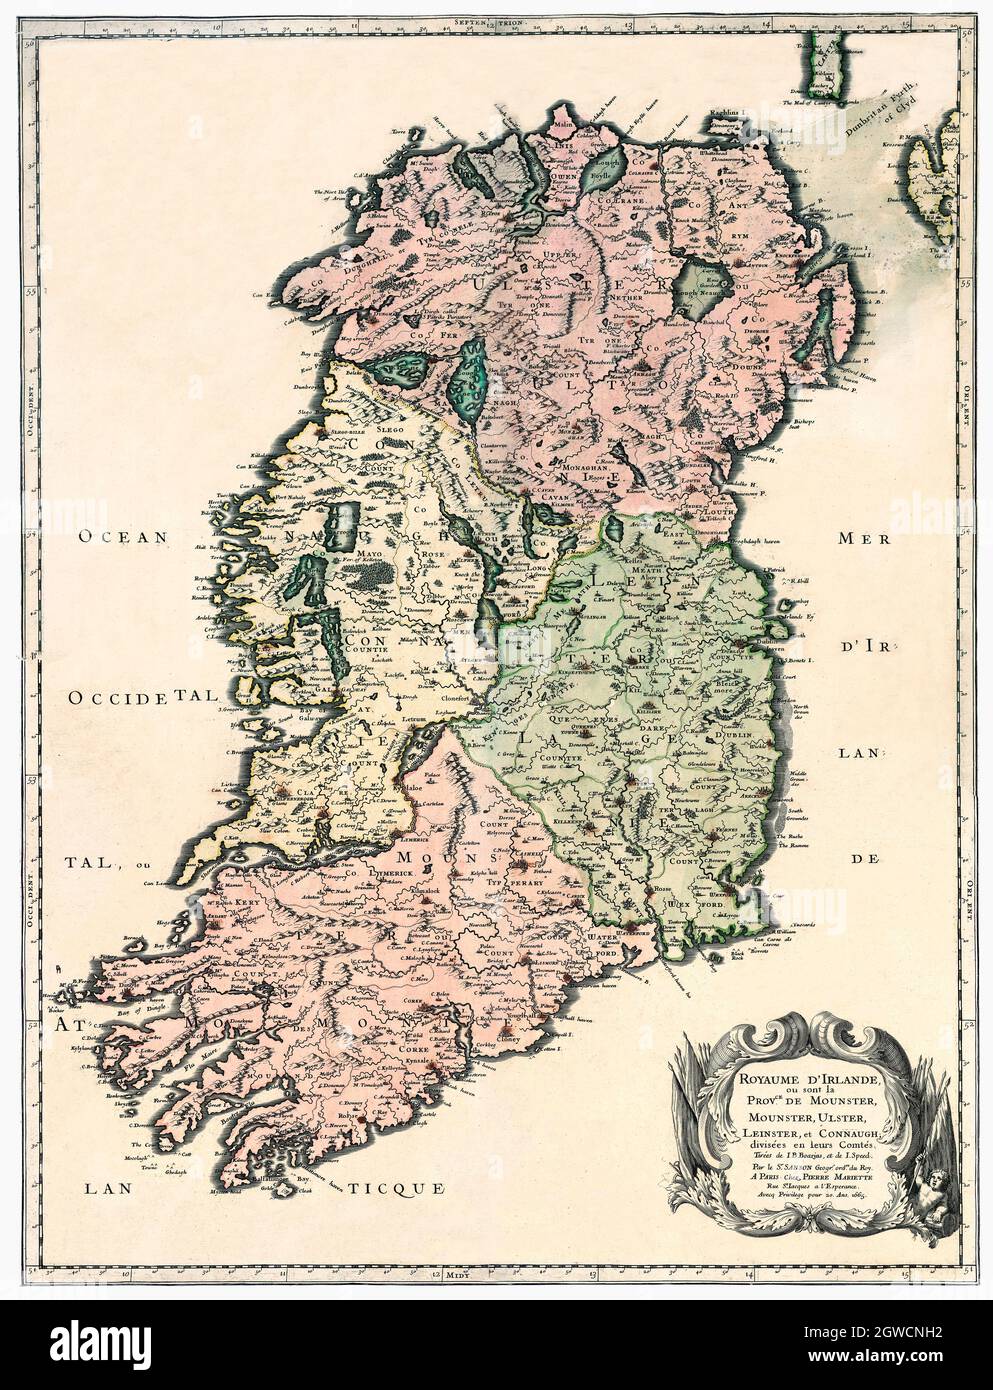 Royaume dIrlande et les provinces de Munster, Ulster, Leinster et Connaught./